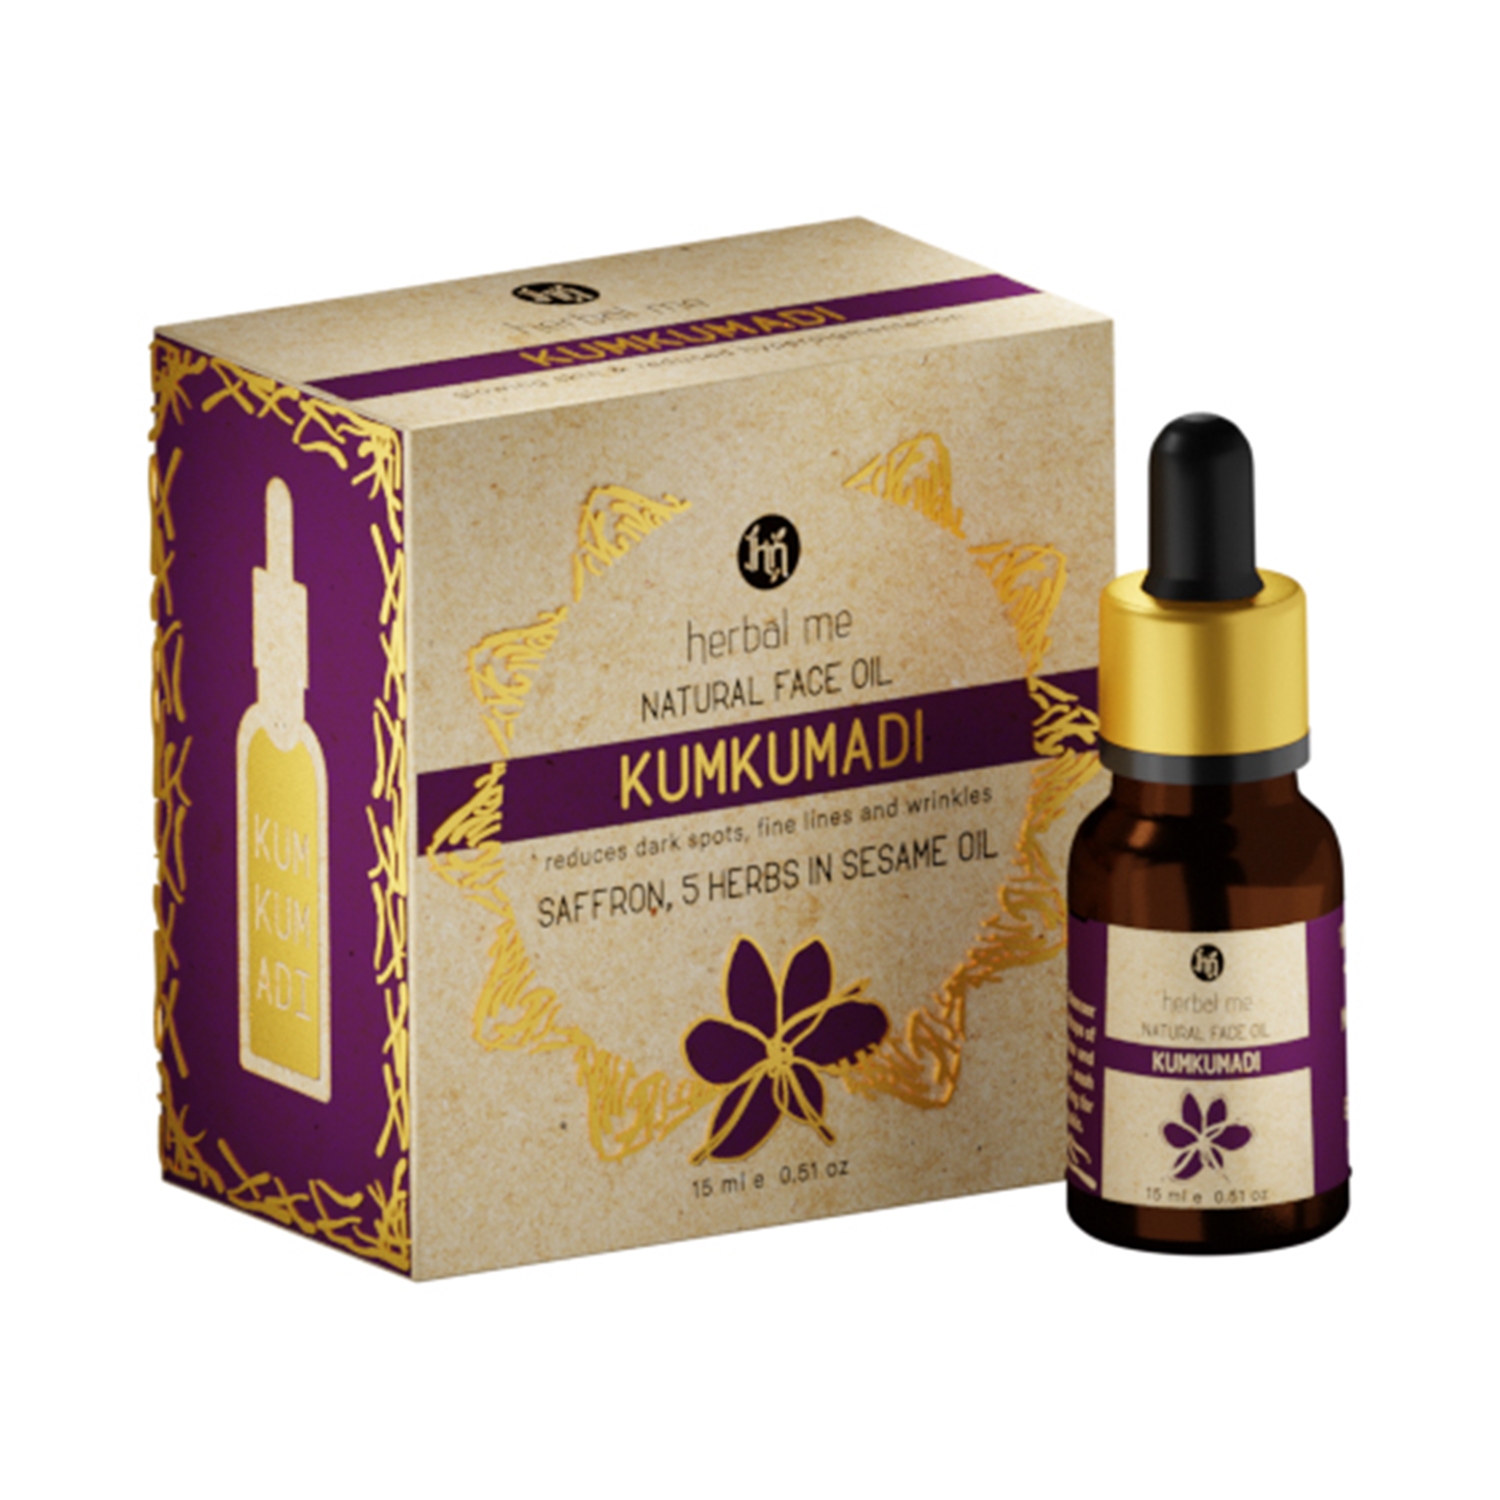 Herbal Me | Herbal Me Kumkumadi Natural Face Oil (15ml)